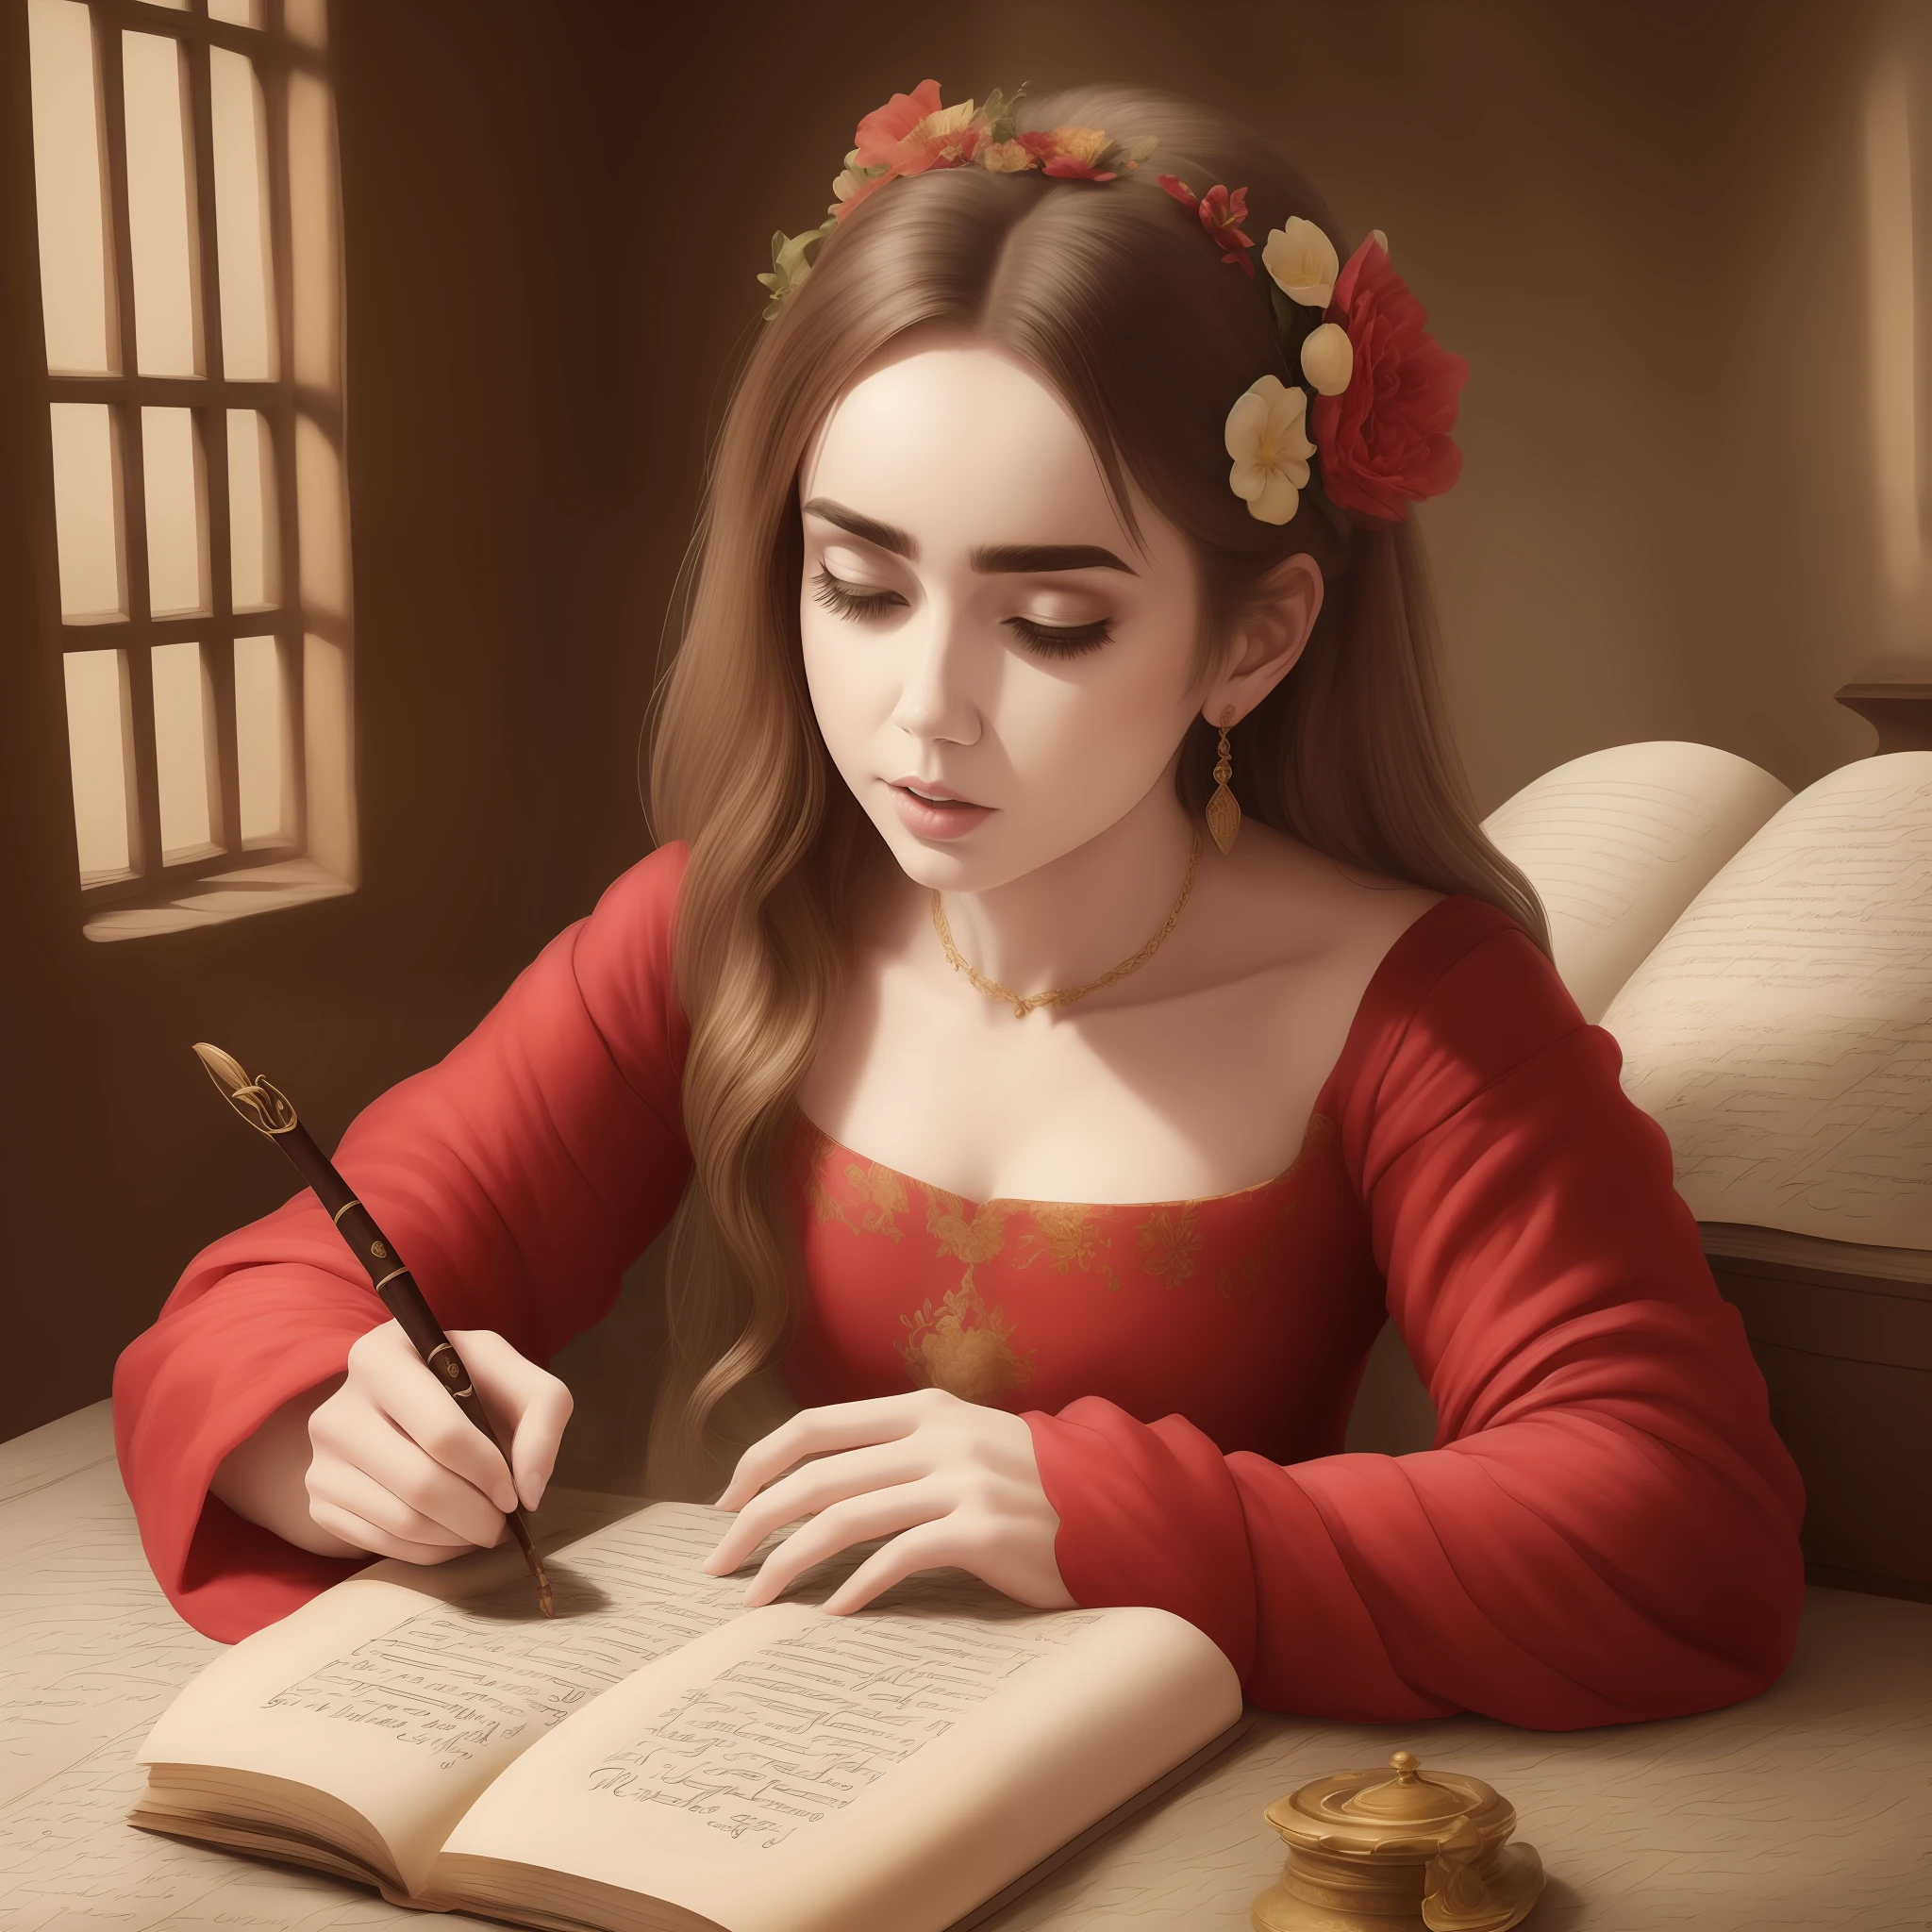 ليلي كولينز ترتدي ملابس العصور الوسطى وتكتب على رق مع محبرة فستان أحمر